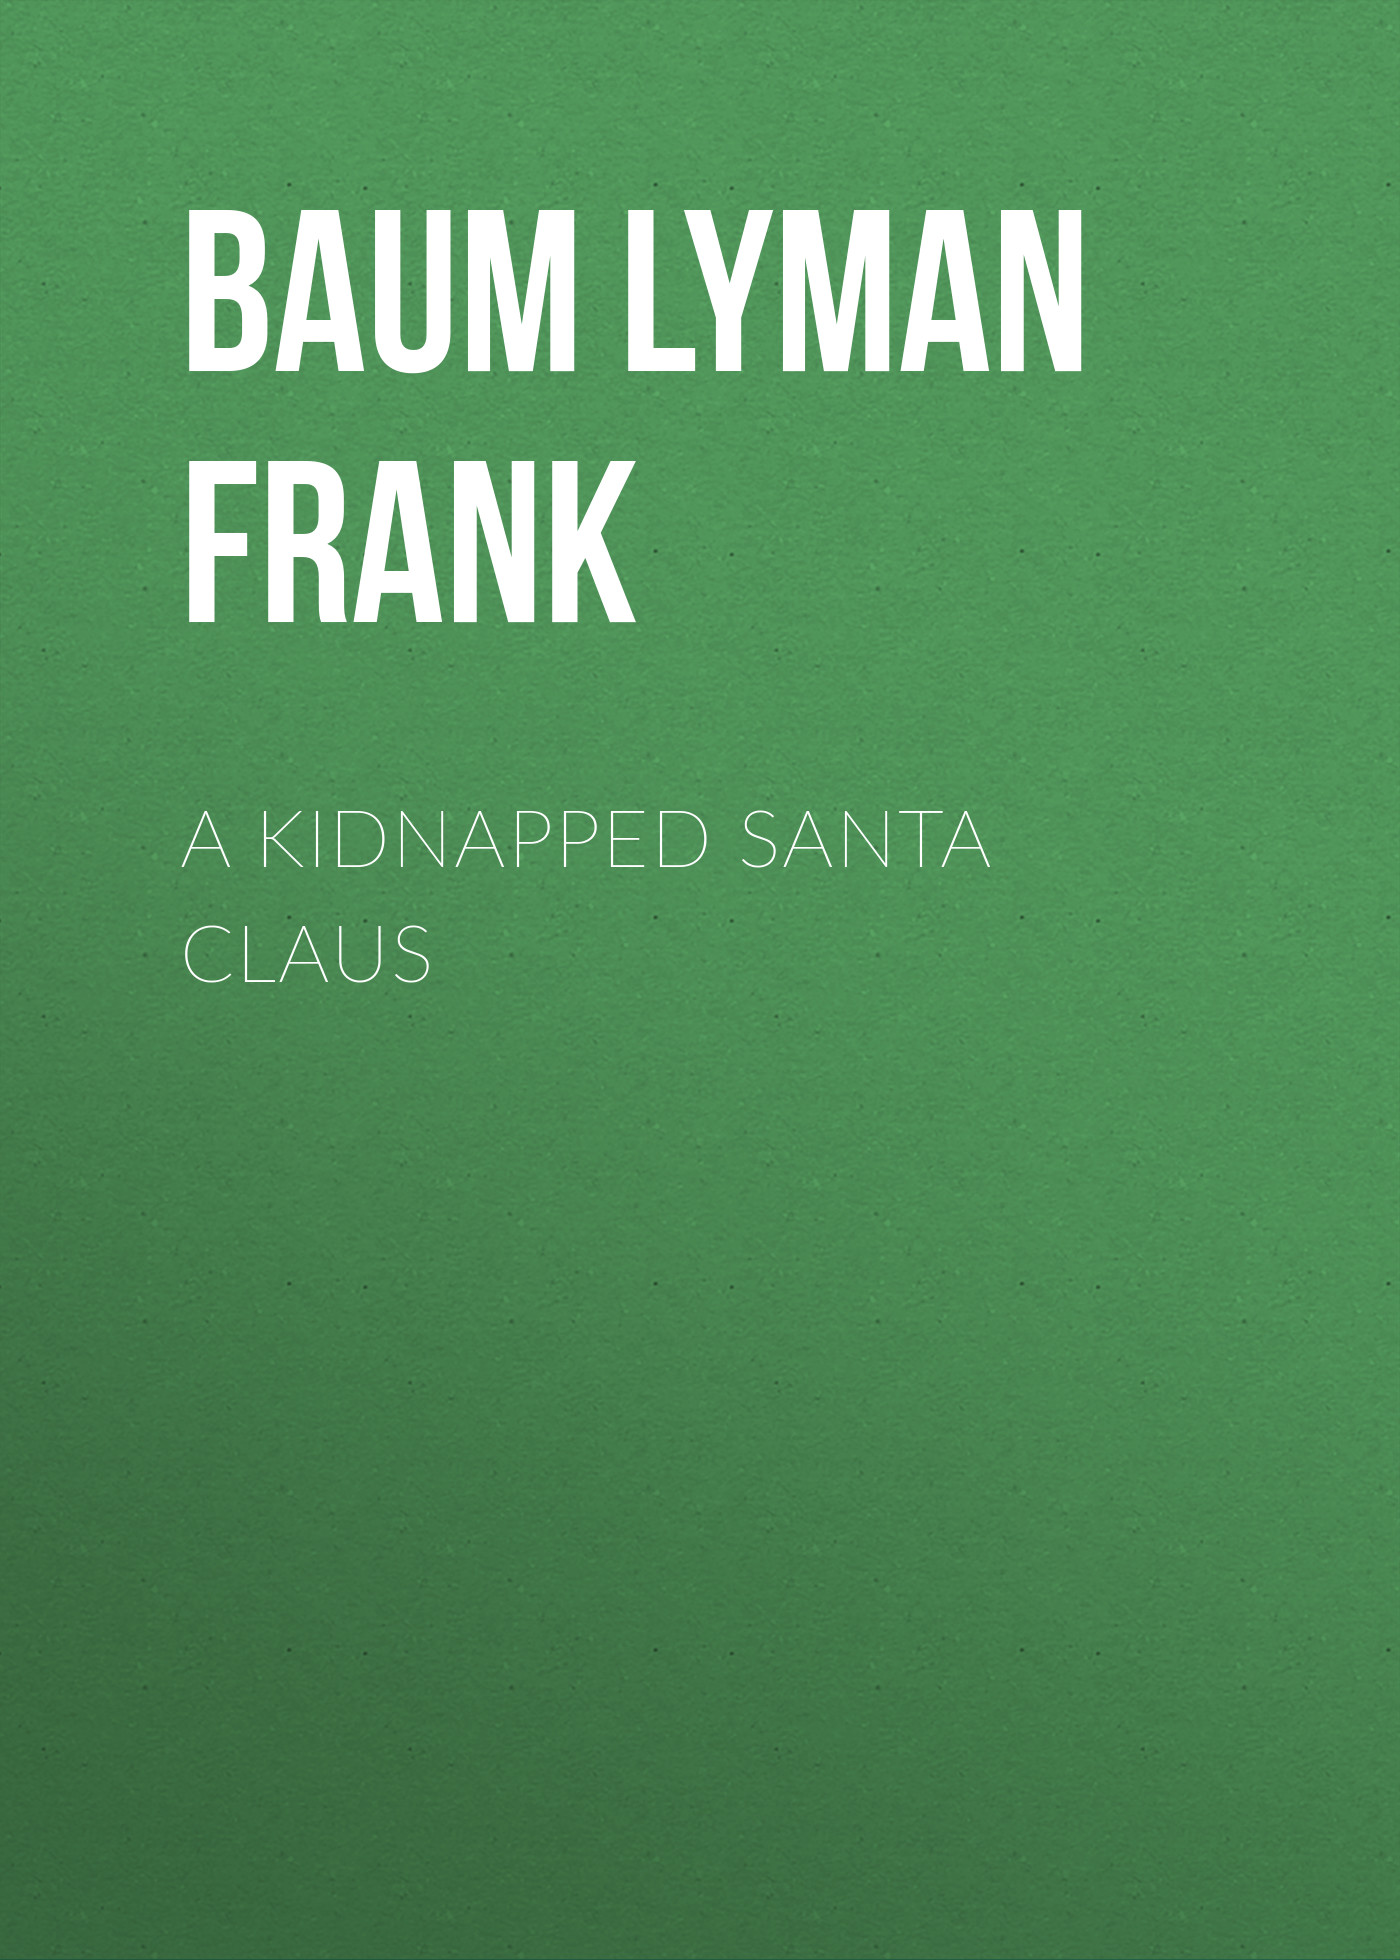 Книга A Kidnapped Santa Claus из серии , созданная Lyman Baum, может относится к жанру Зарубежная старинная литература, Зарубежная классика. Стоимость электронной книги A Kidnapped Santa Claus с идентификатором 25021315 составляет 0 руб.